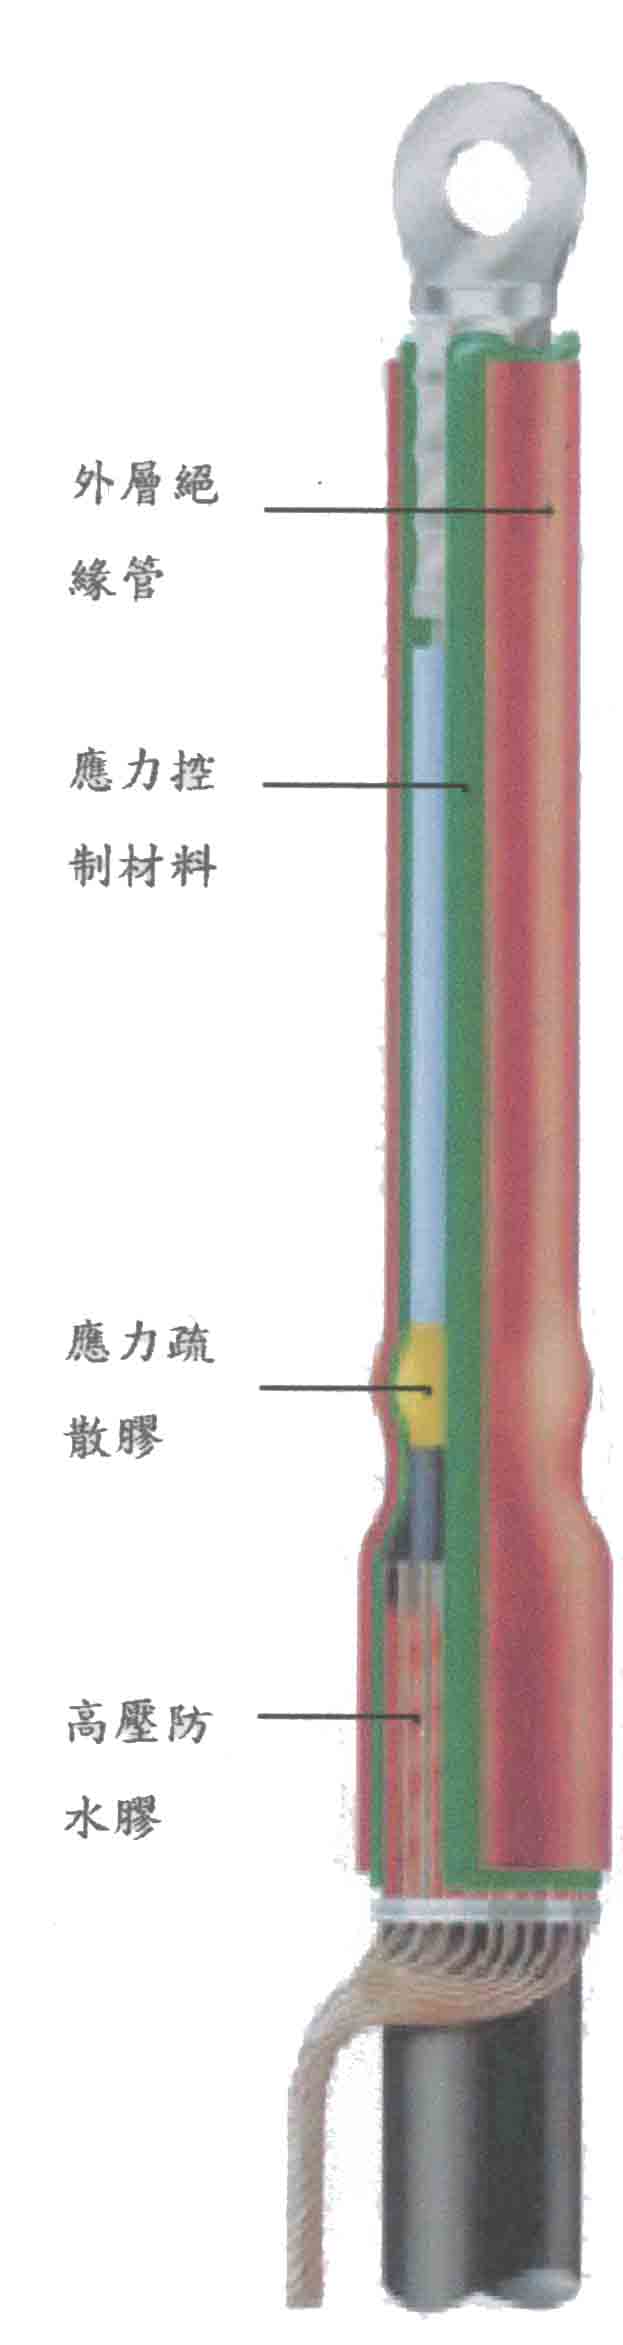 Raychem 瑞侃熱縮電纜處理頭剖面圖